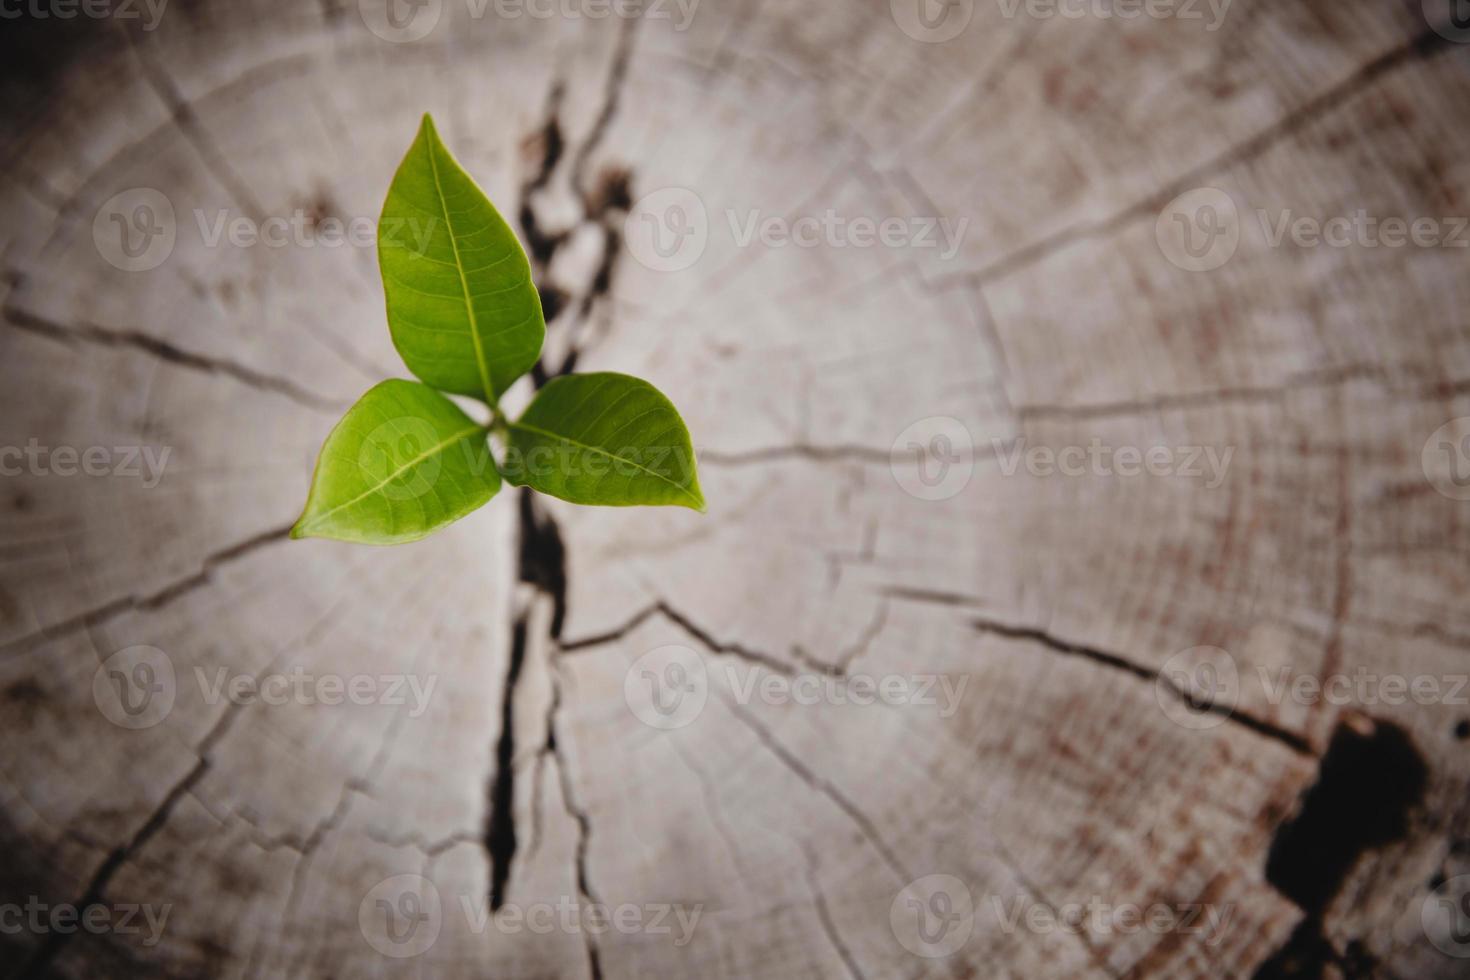 anel de crescimento de vida nova árvore closeup. folha de planta verde forte crescendo no toco de madeira velho. esperança de uma nova vida no futuro ambiente natural, renovação com desenvolvimento de negócios e conceito eco simbólico. foto